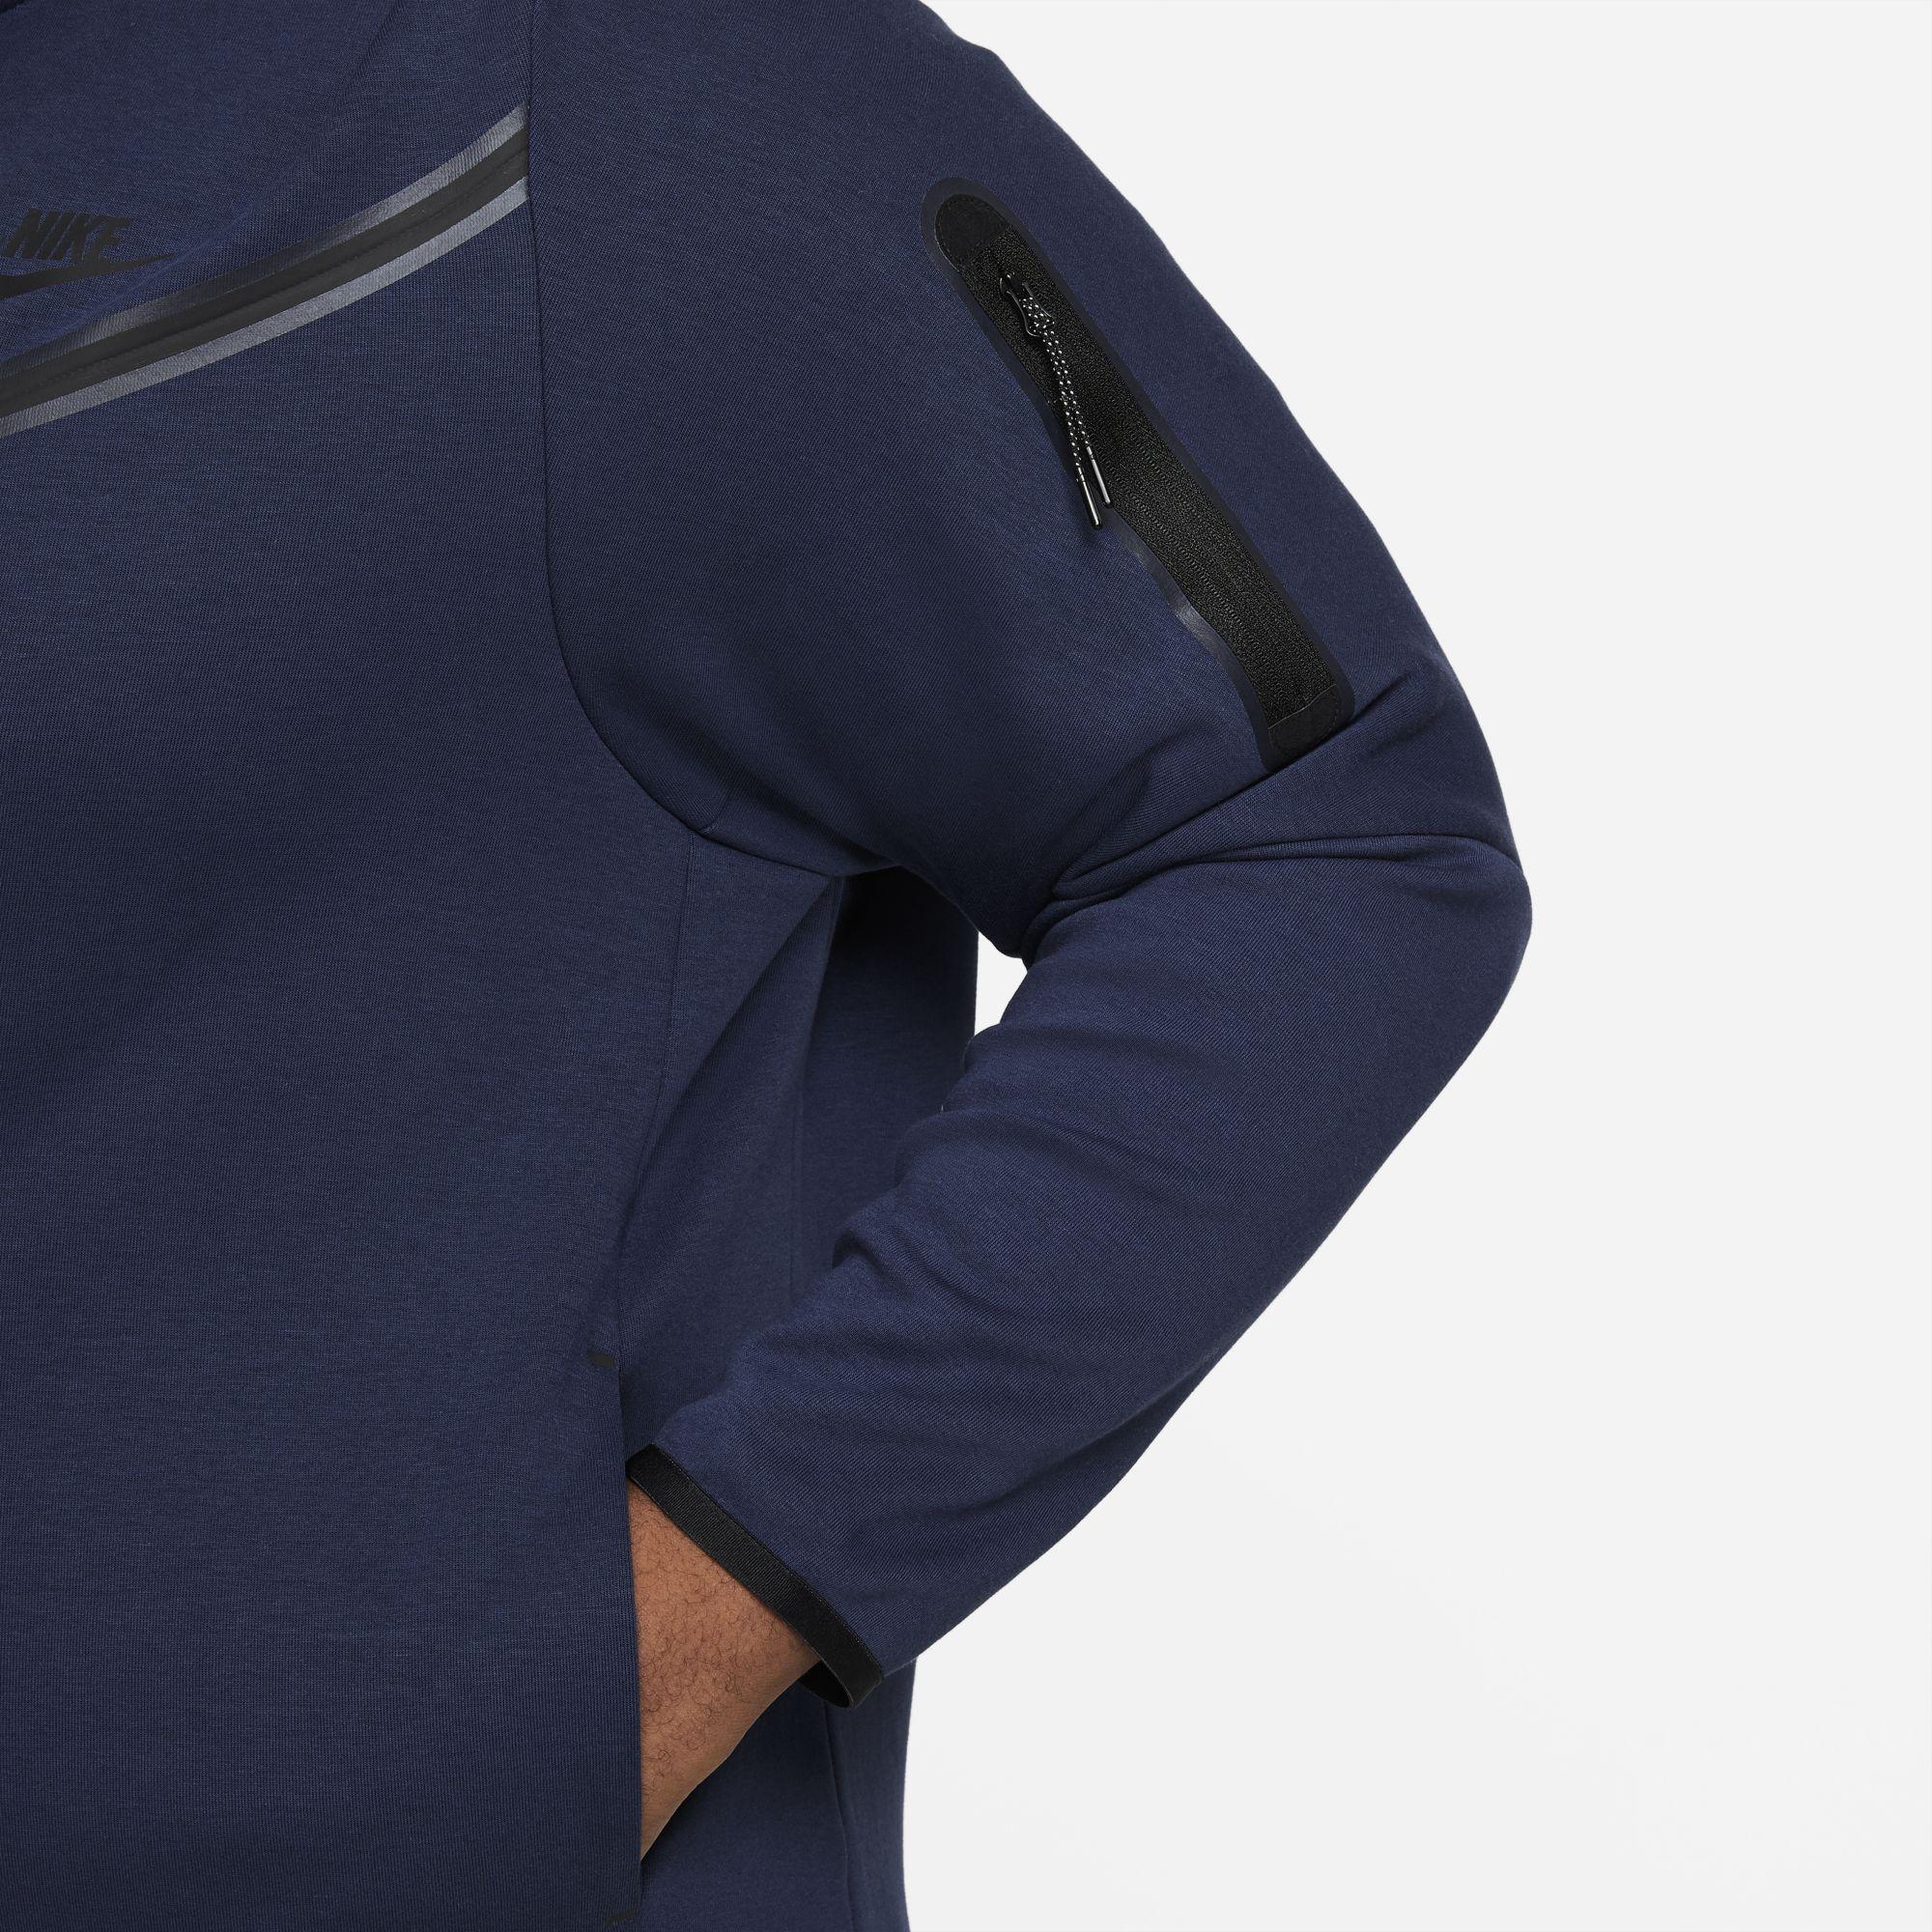 Nike Sportswear Tech Fleece Full-Zip Hoodie Midnight Navy/Black